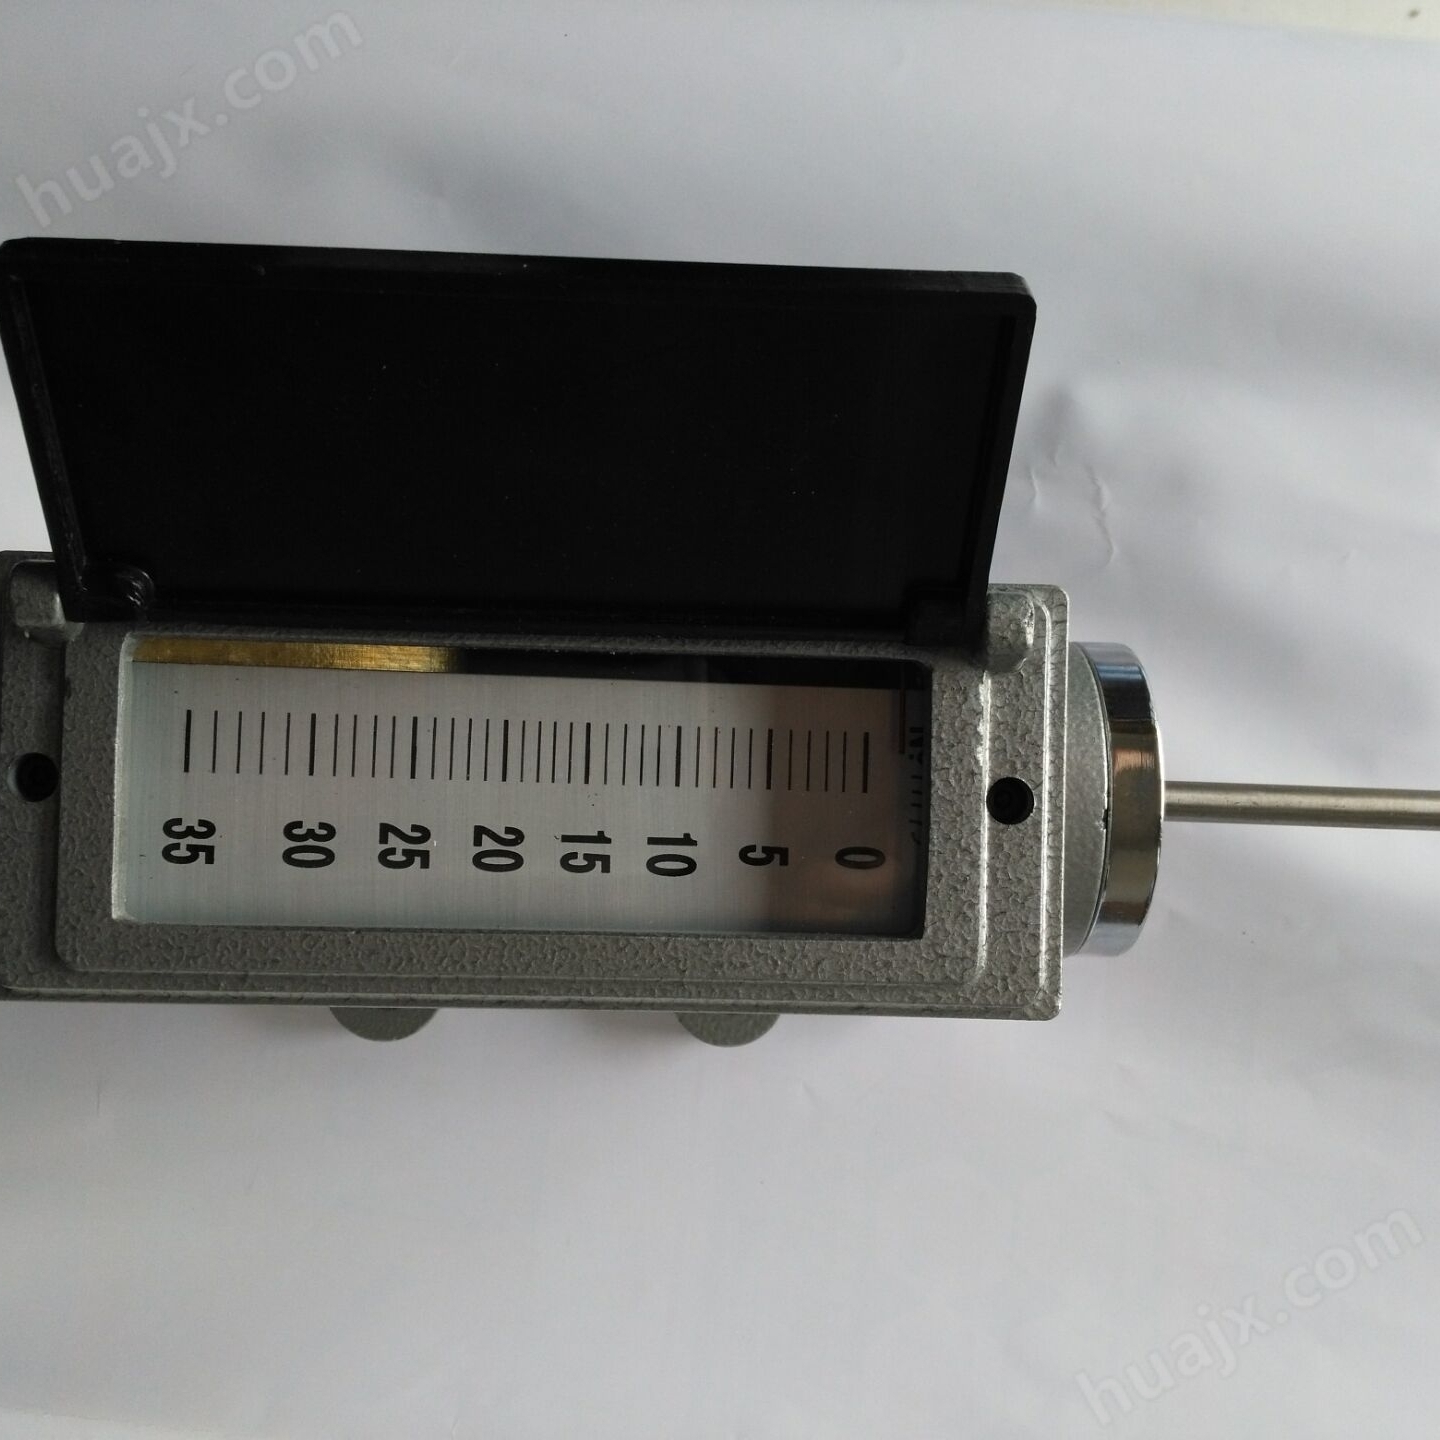 NE9032热膨胀监测保护仪